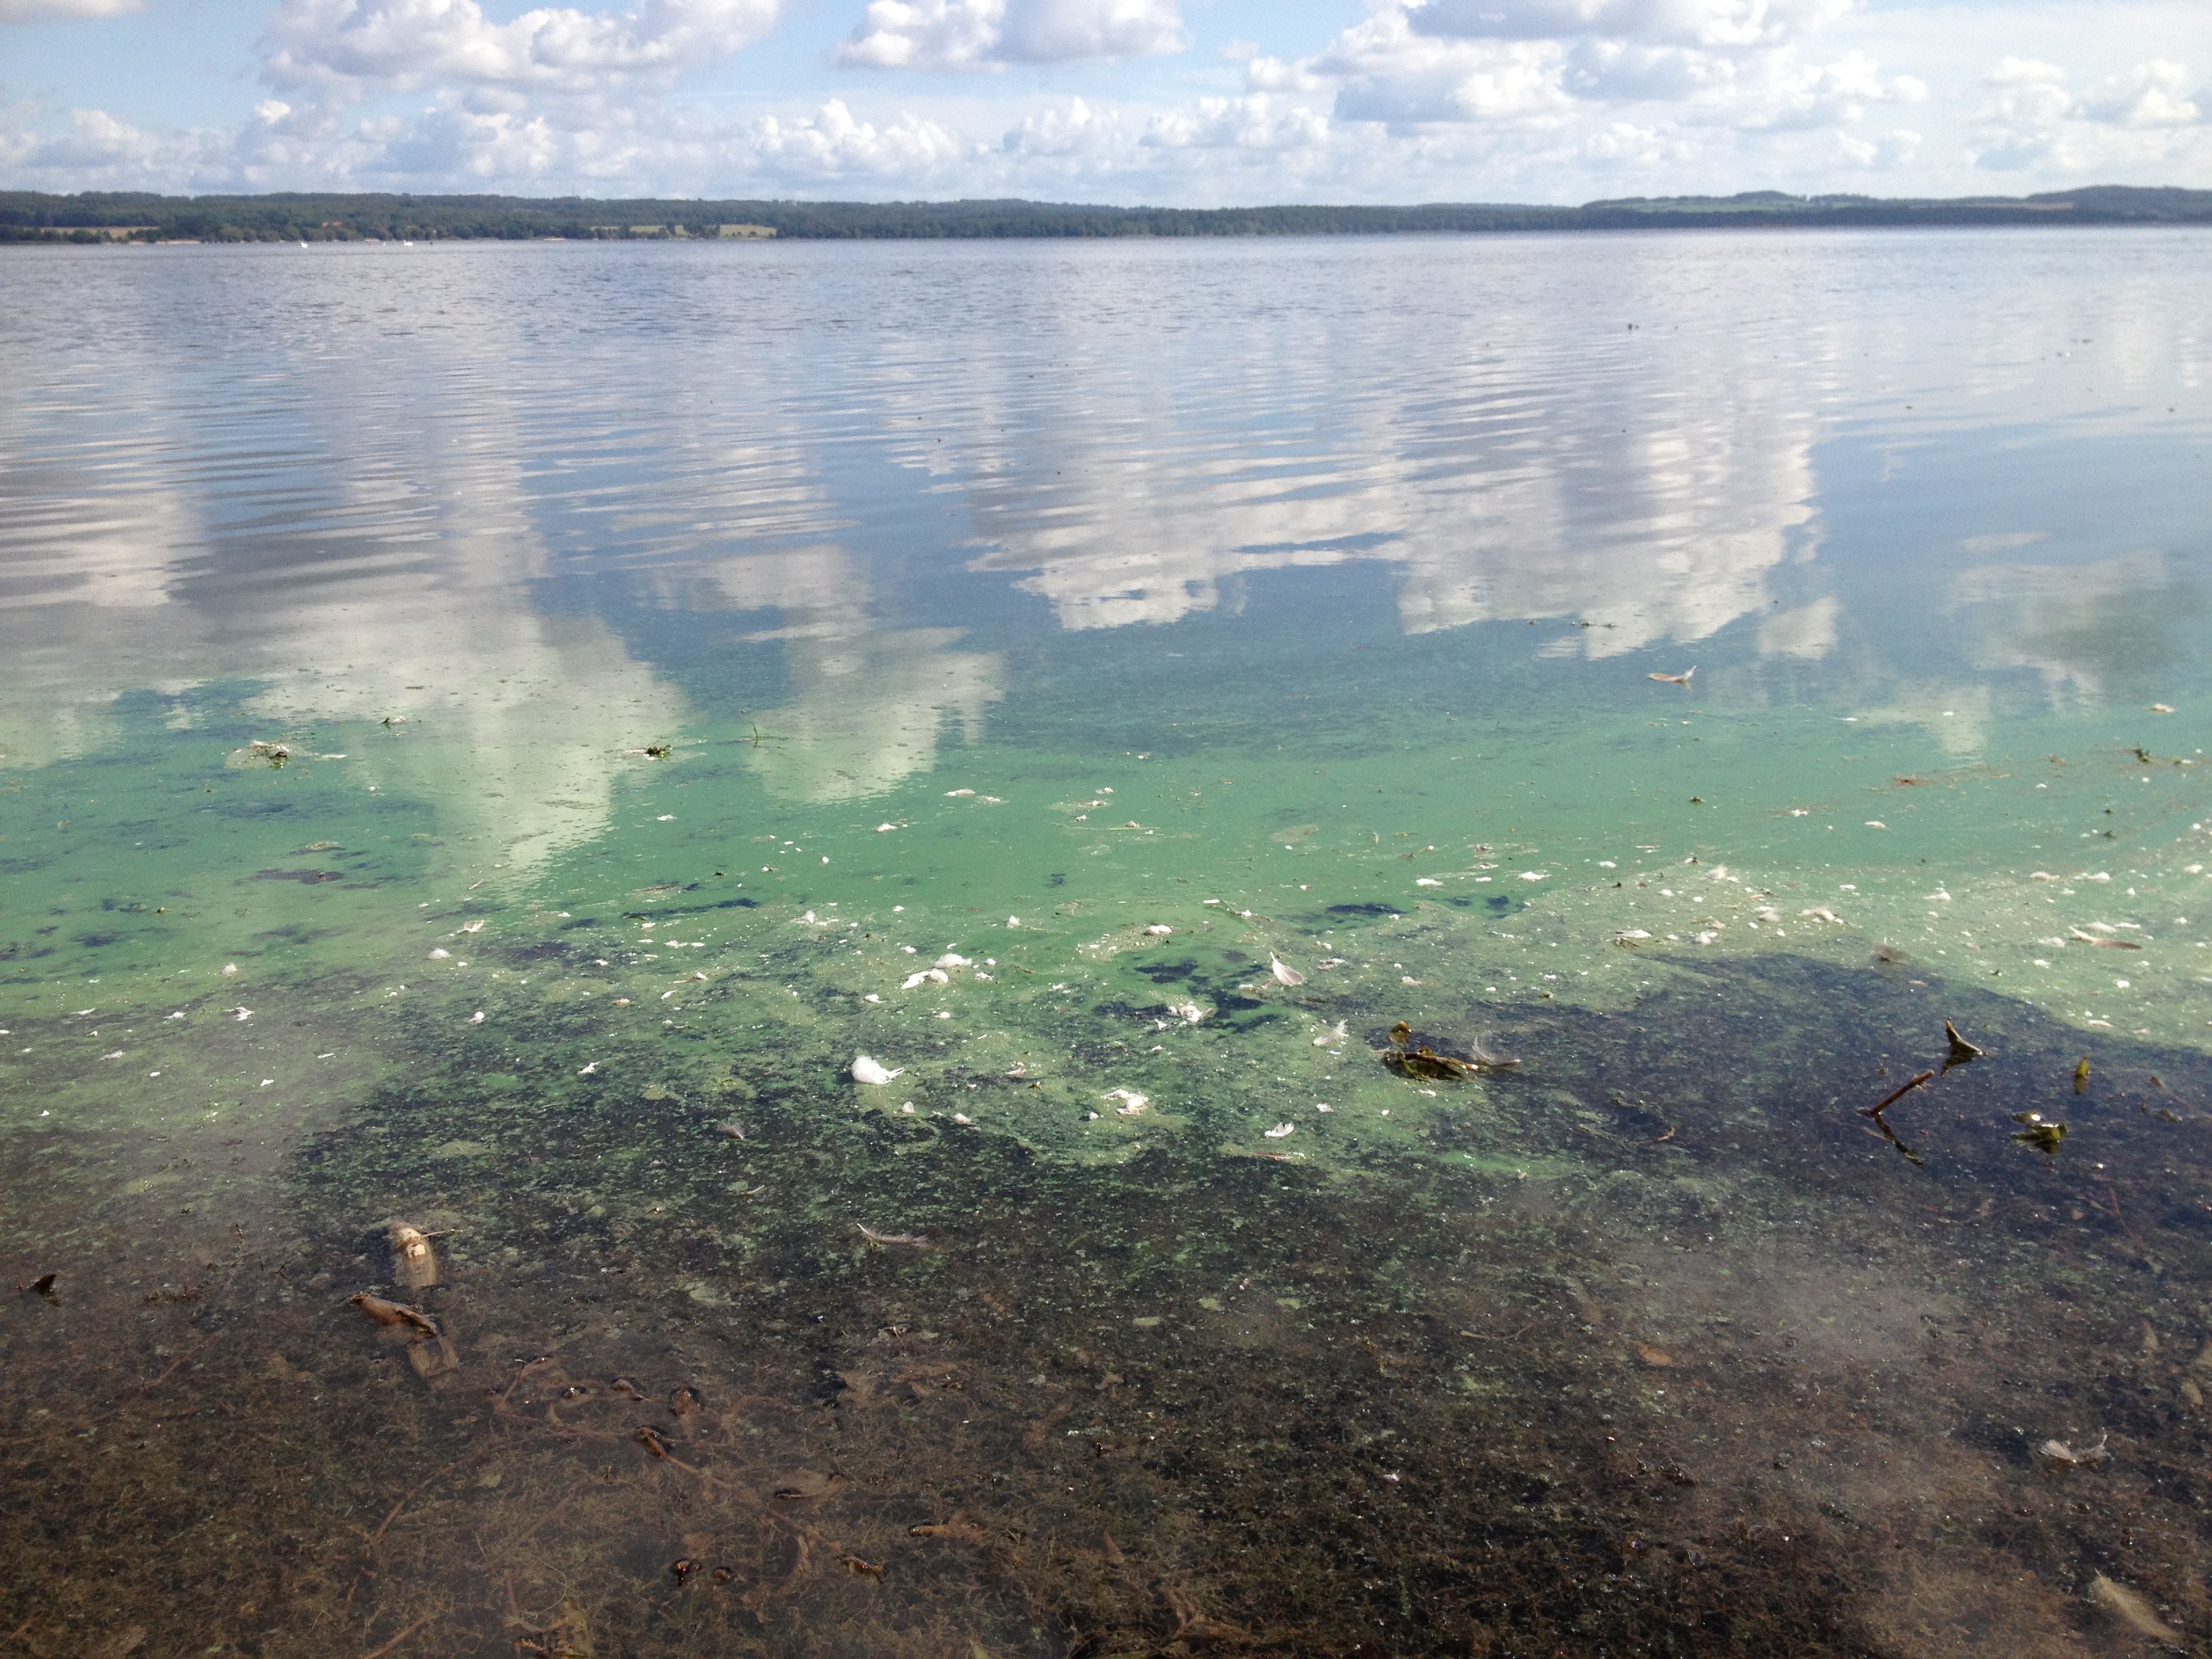 Växtplankton (även kallade mikroalger) förekommer naturligt i sjöar och hav. På somrarna kan det bli stora mängder av växtplankton, algblomning. Foto: Anna Söderman/Sydvatten